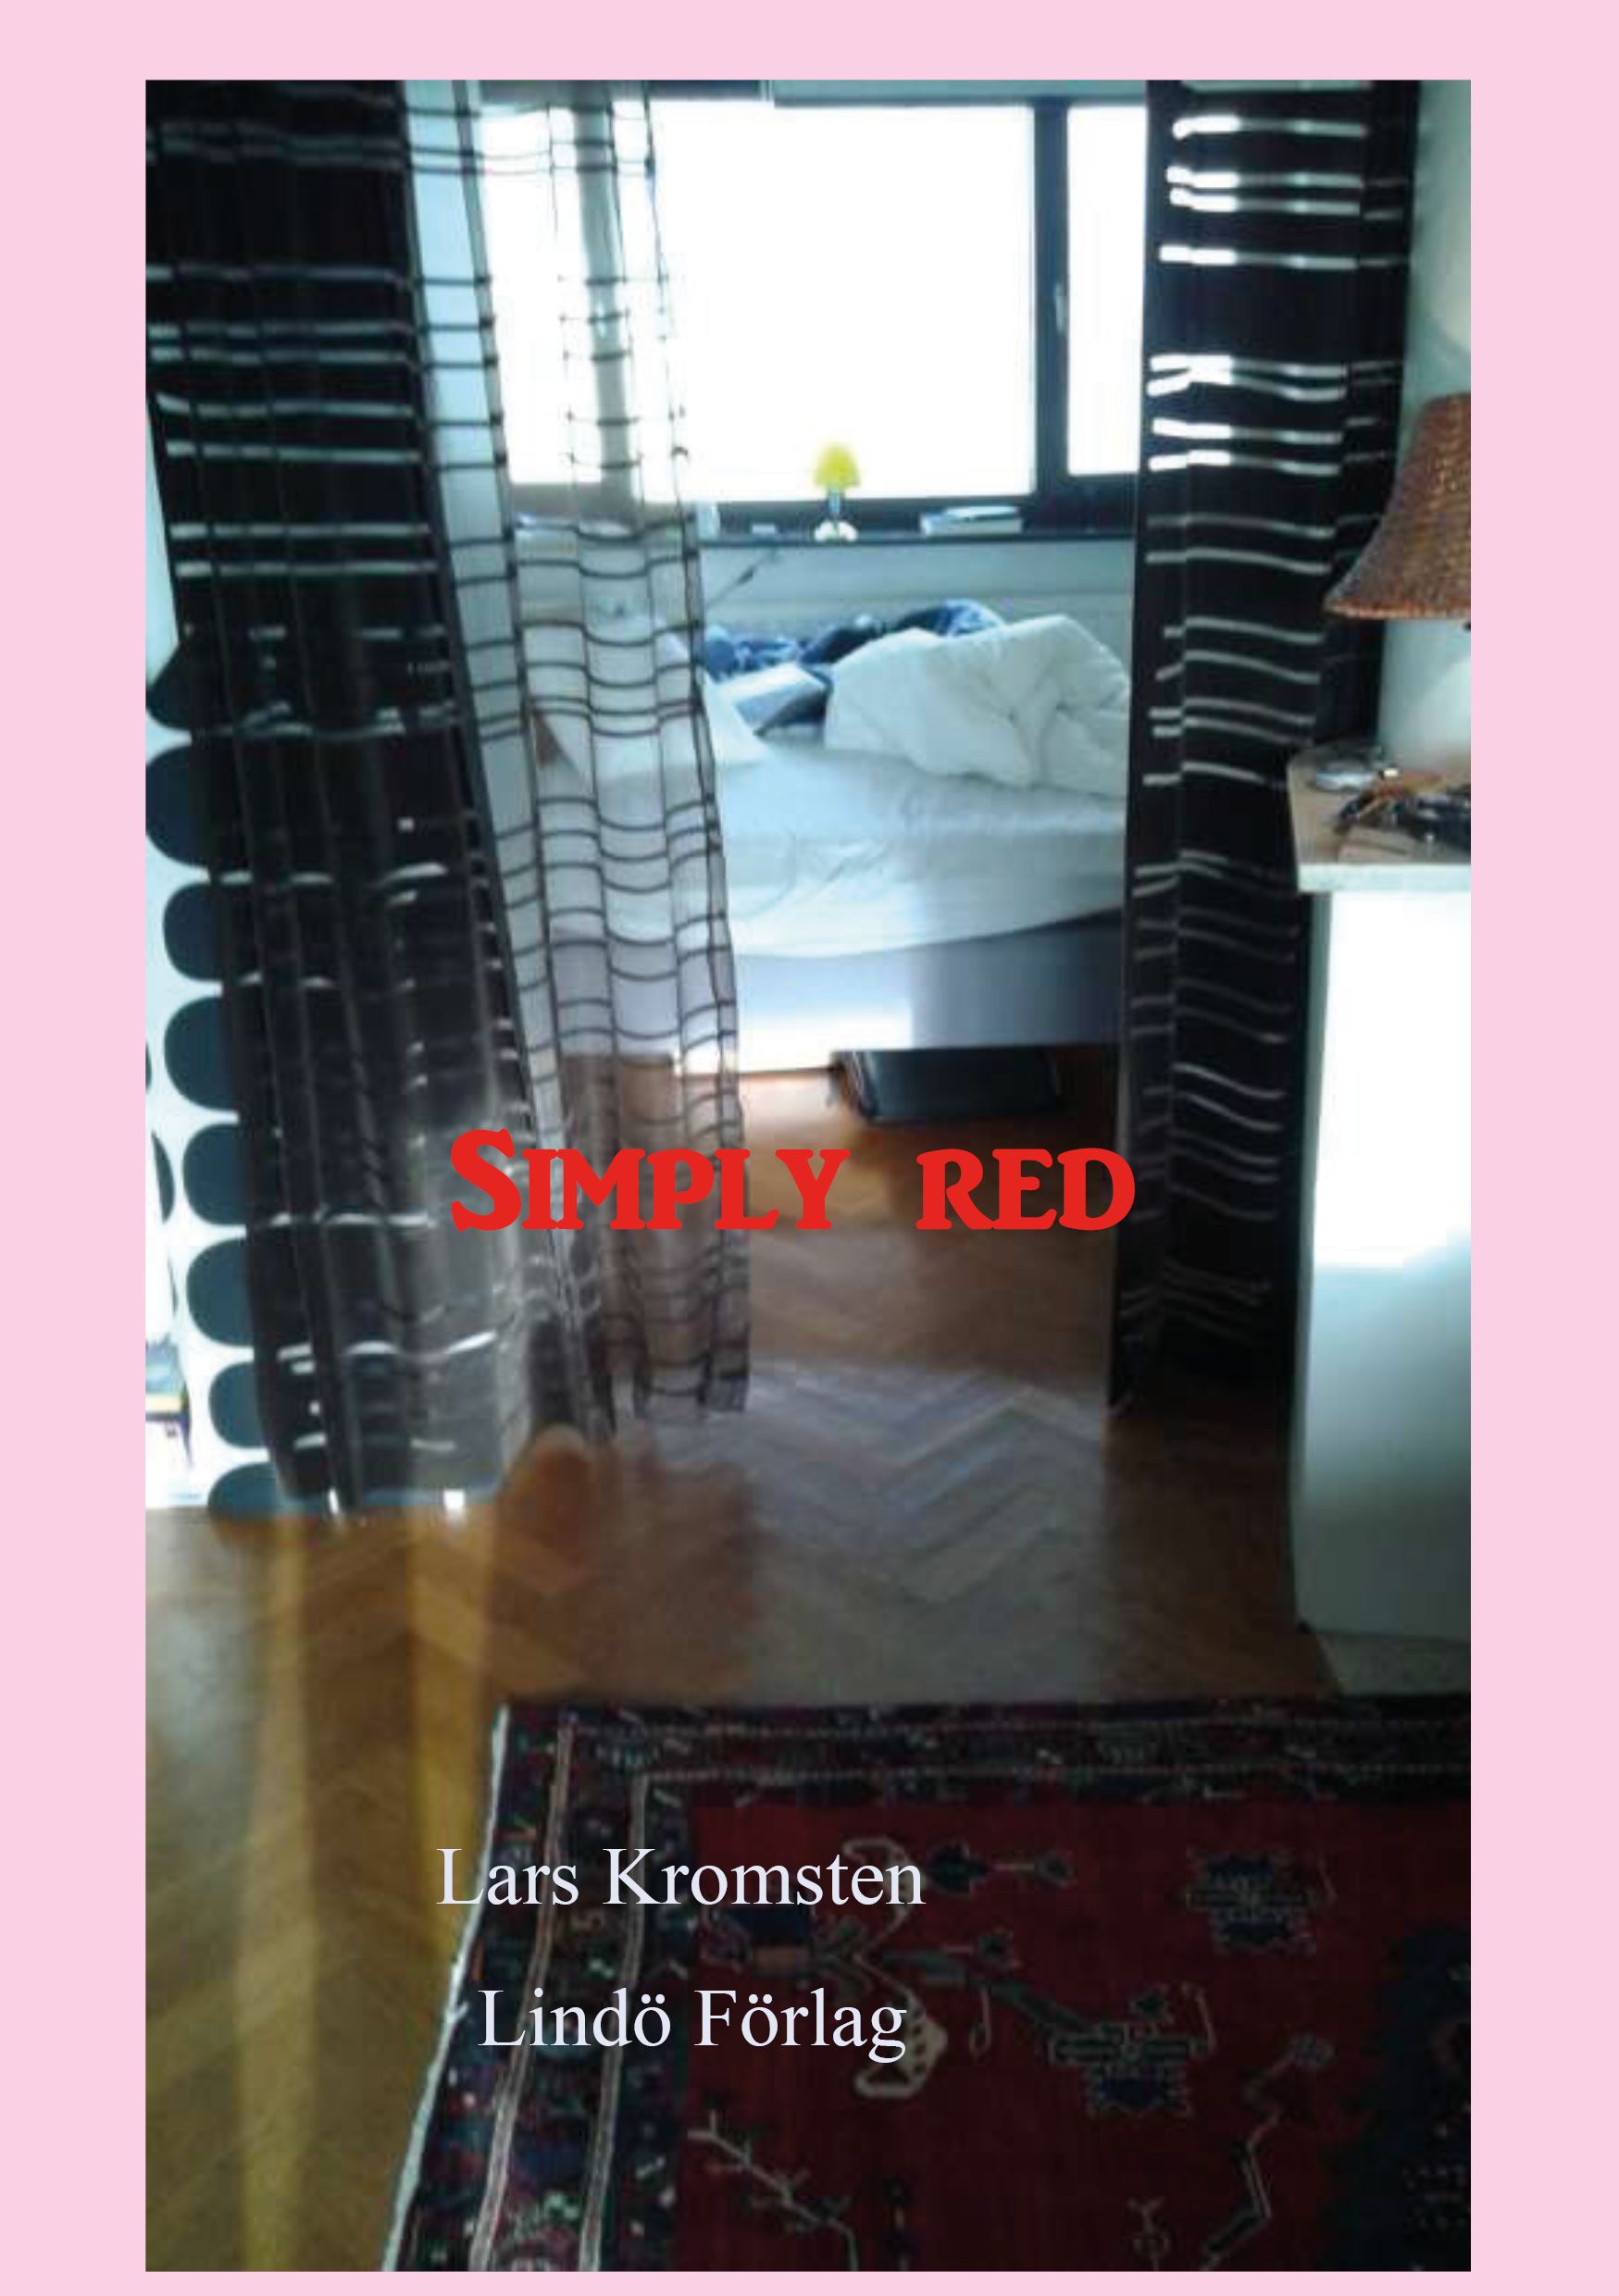 Simply red, eBook by Lars Kromsten